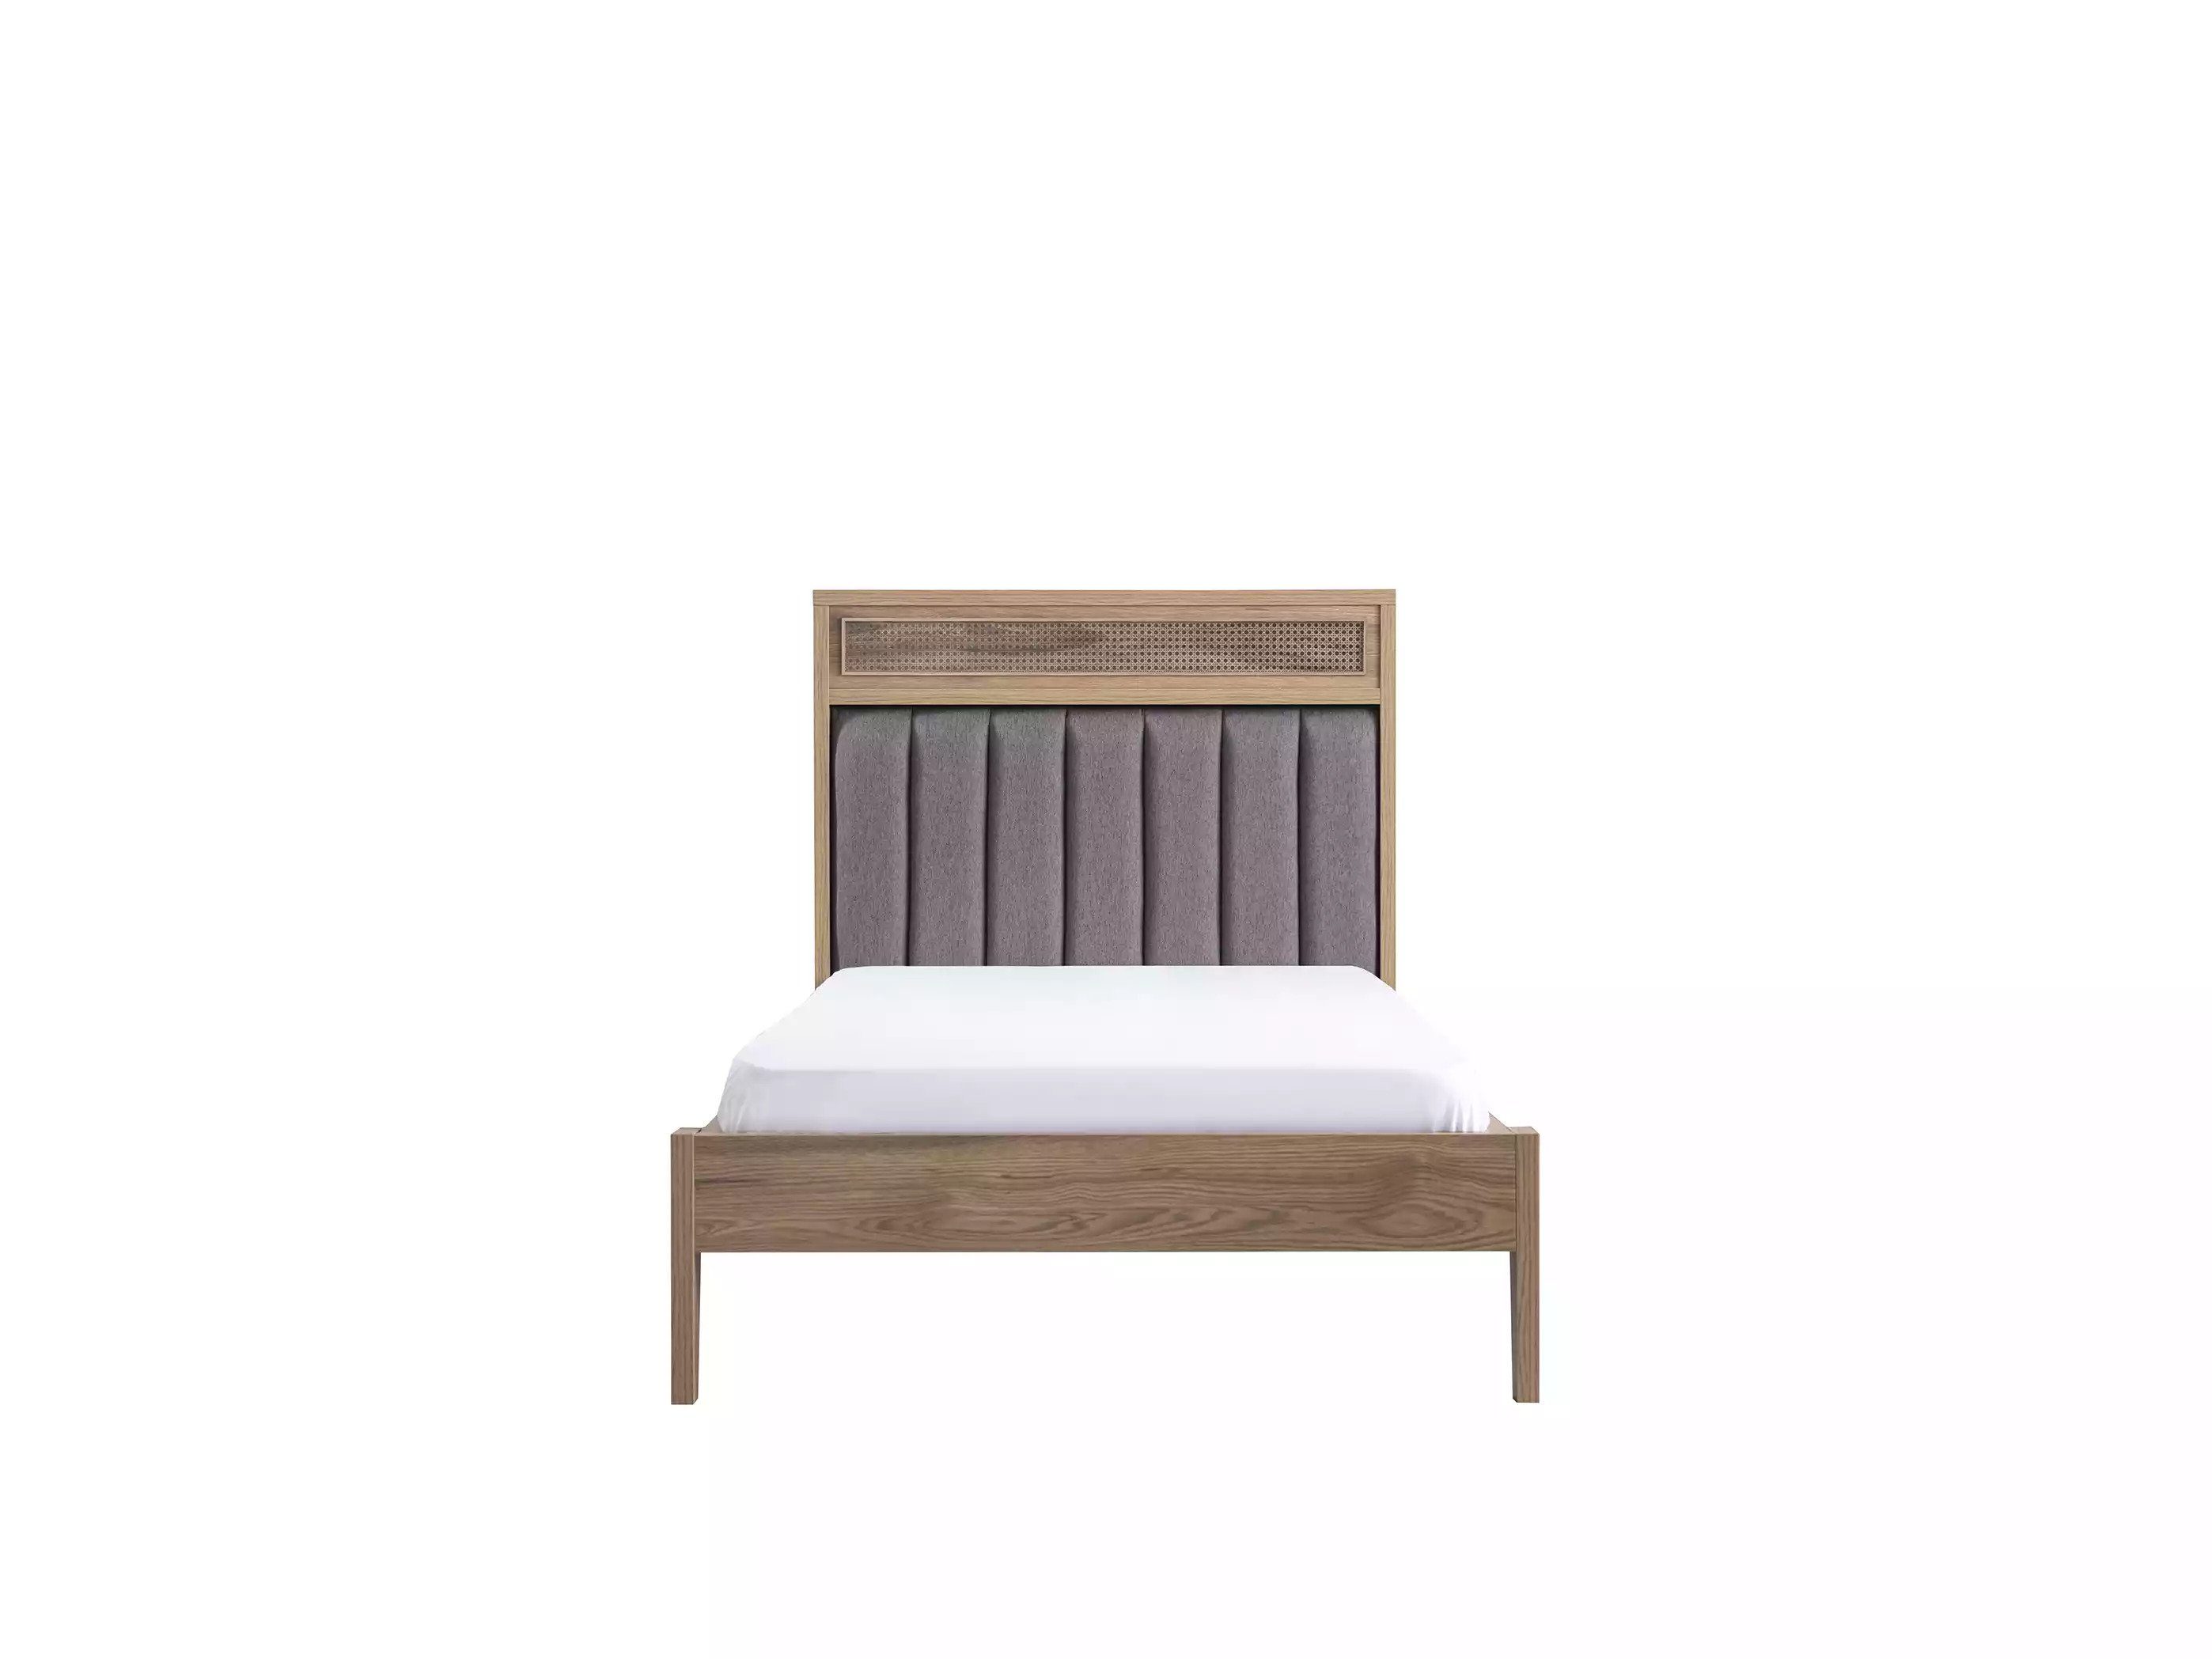 Braun Kindermöbel Jugendbett in cm, Bett Made 100 JVmoebel Holz Bettrahmen Europa Kinderbett